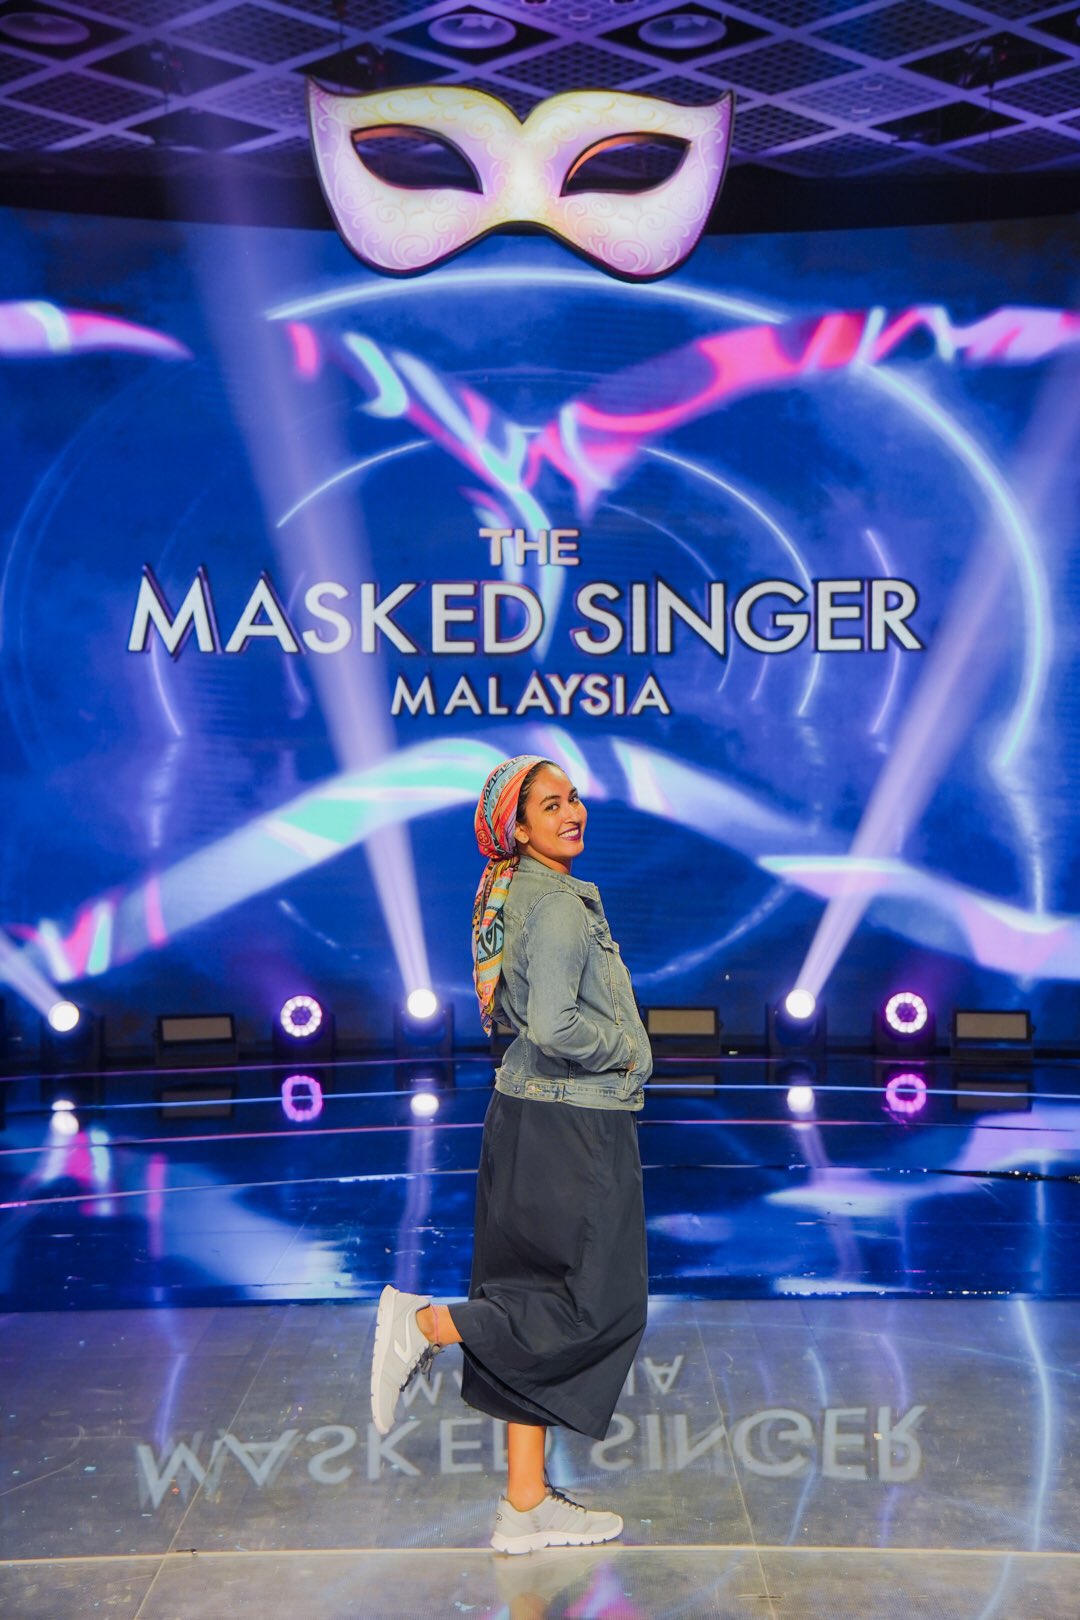 Malaysia 2 singer masked season The Masked